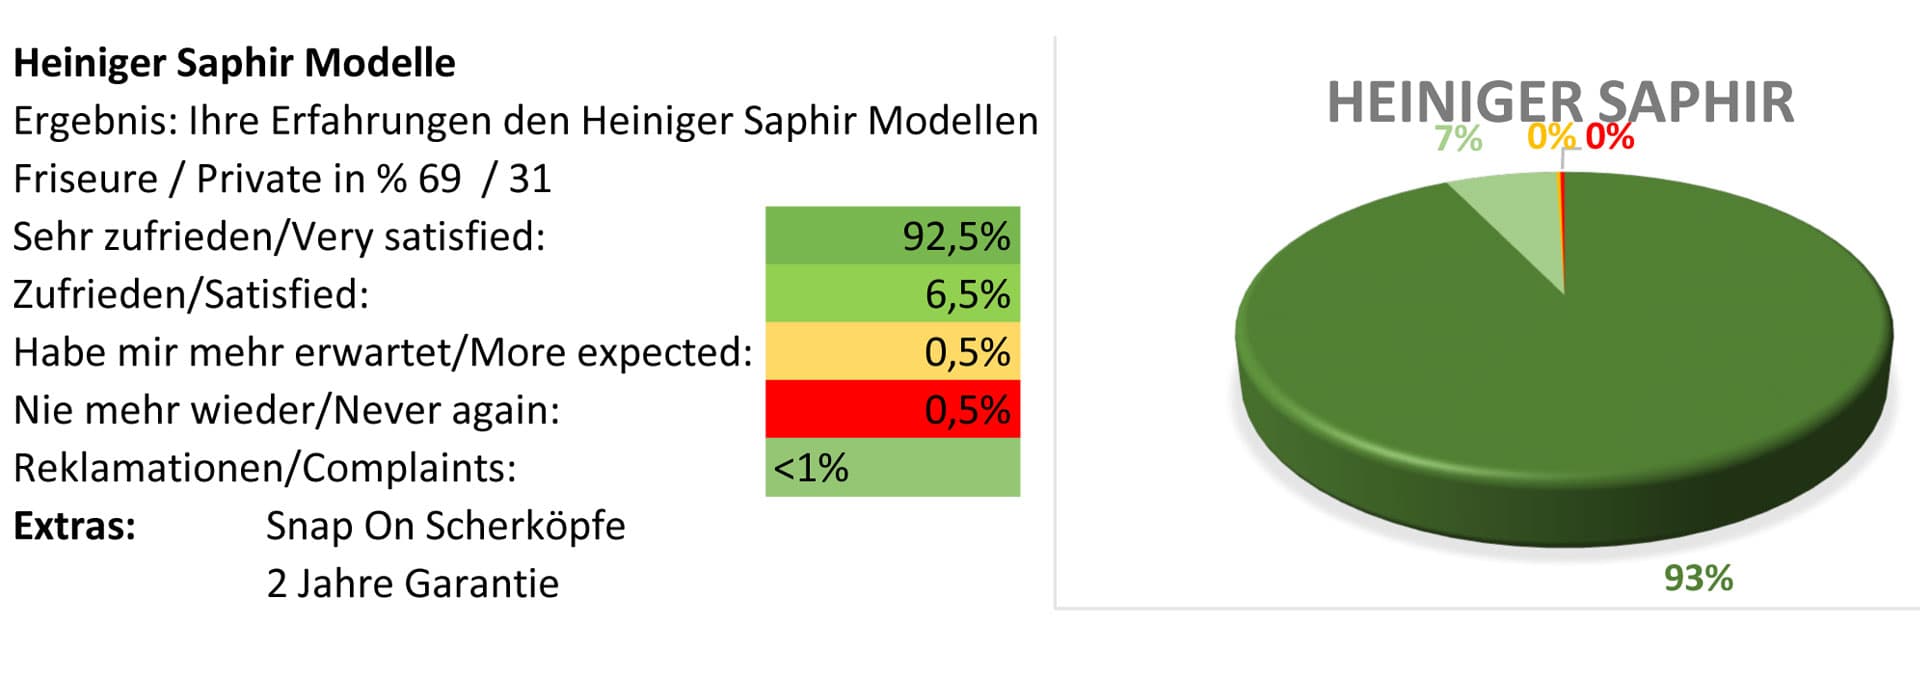 Heiniger Saphir pet clipper test report